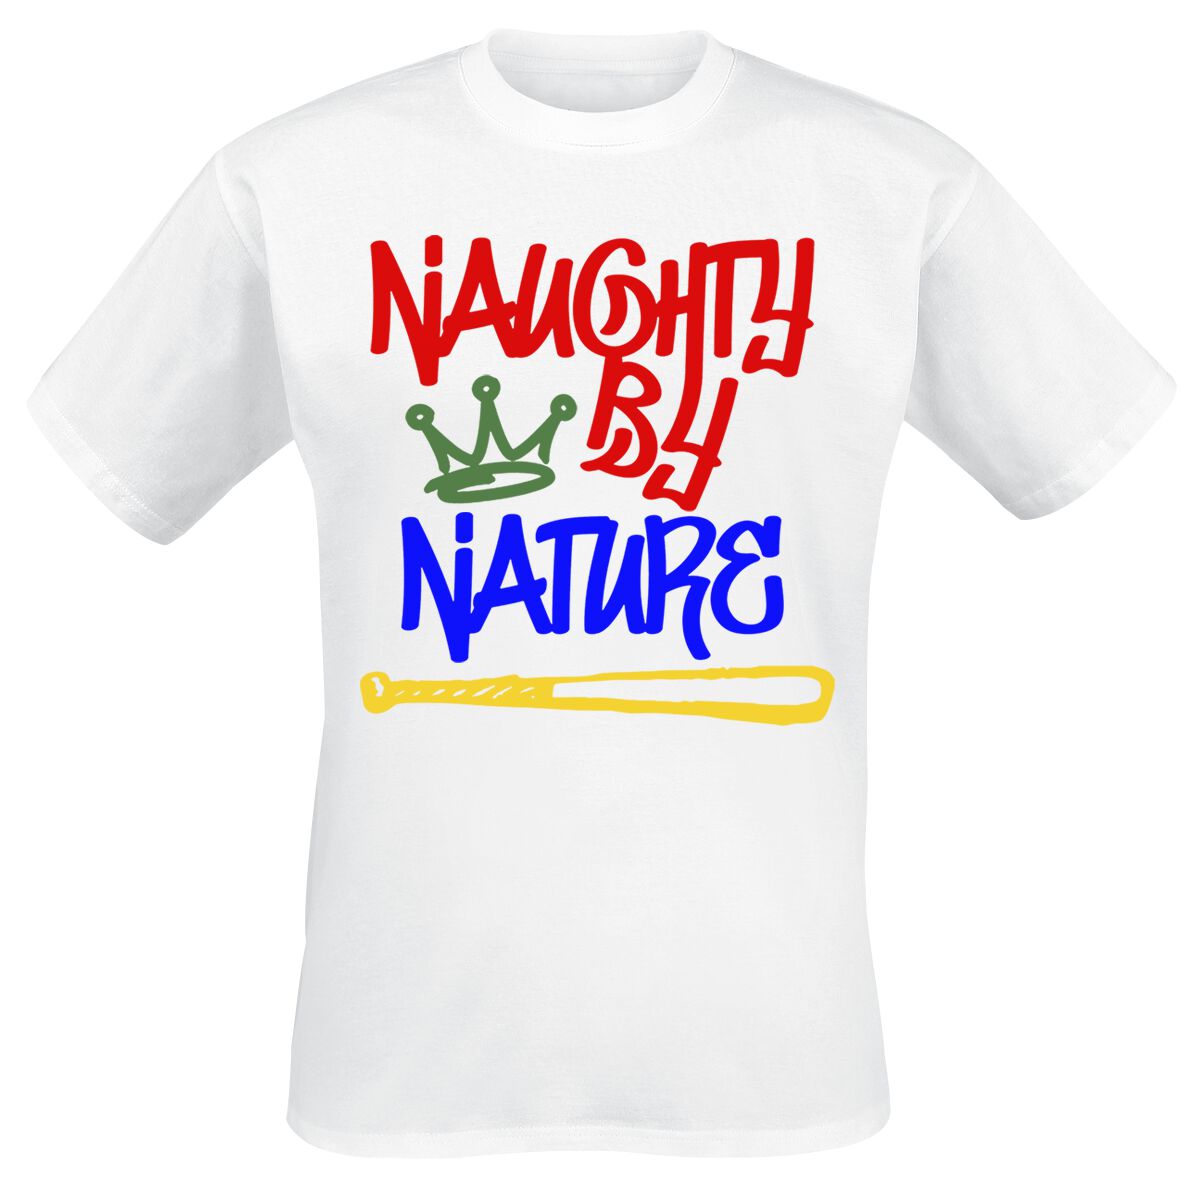 Naughty by Nature T-Shirt - Graffiti Logo - S bis 3XL - für Männer - Größe 3XL - weiß  - Lizenziertes Merchandise!